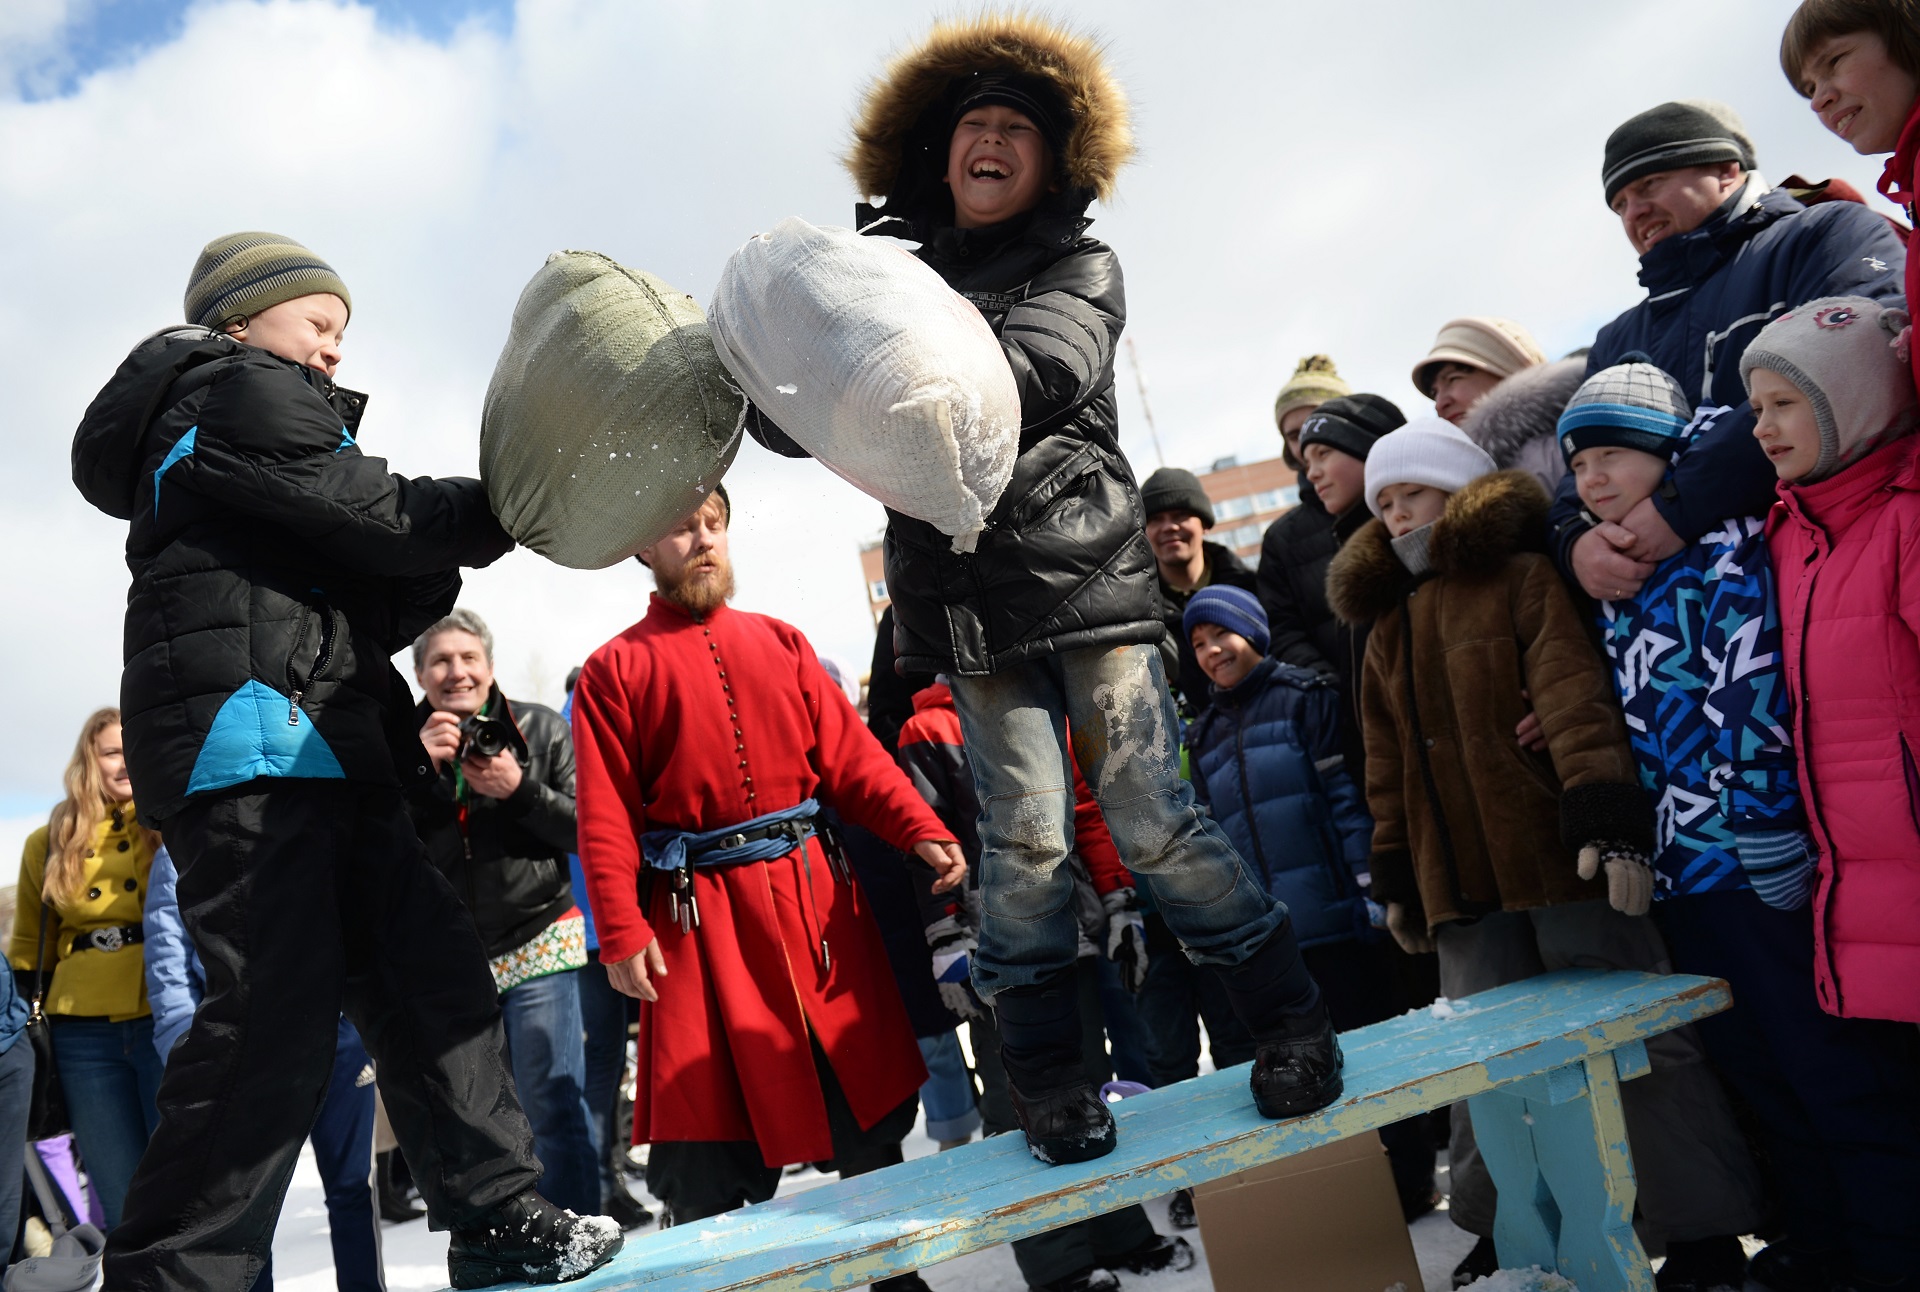 2806191 03/13/2016 A pillow fight during Maslenitsa festival in Yekaterinburg's Kharitonovsky Park. Pavel Lisitsyn/Sputnik